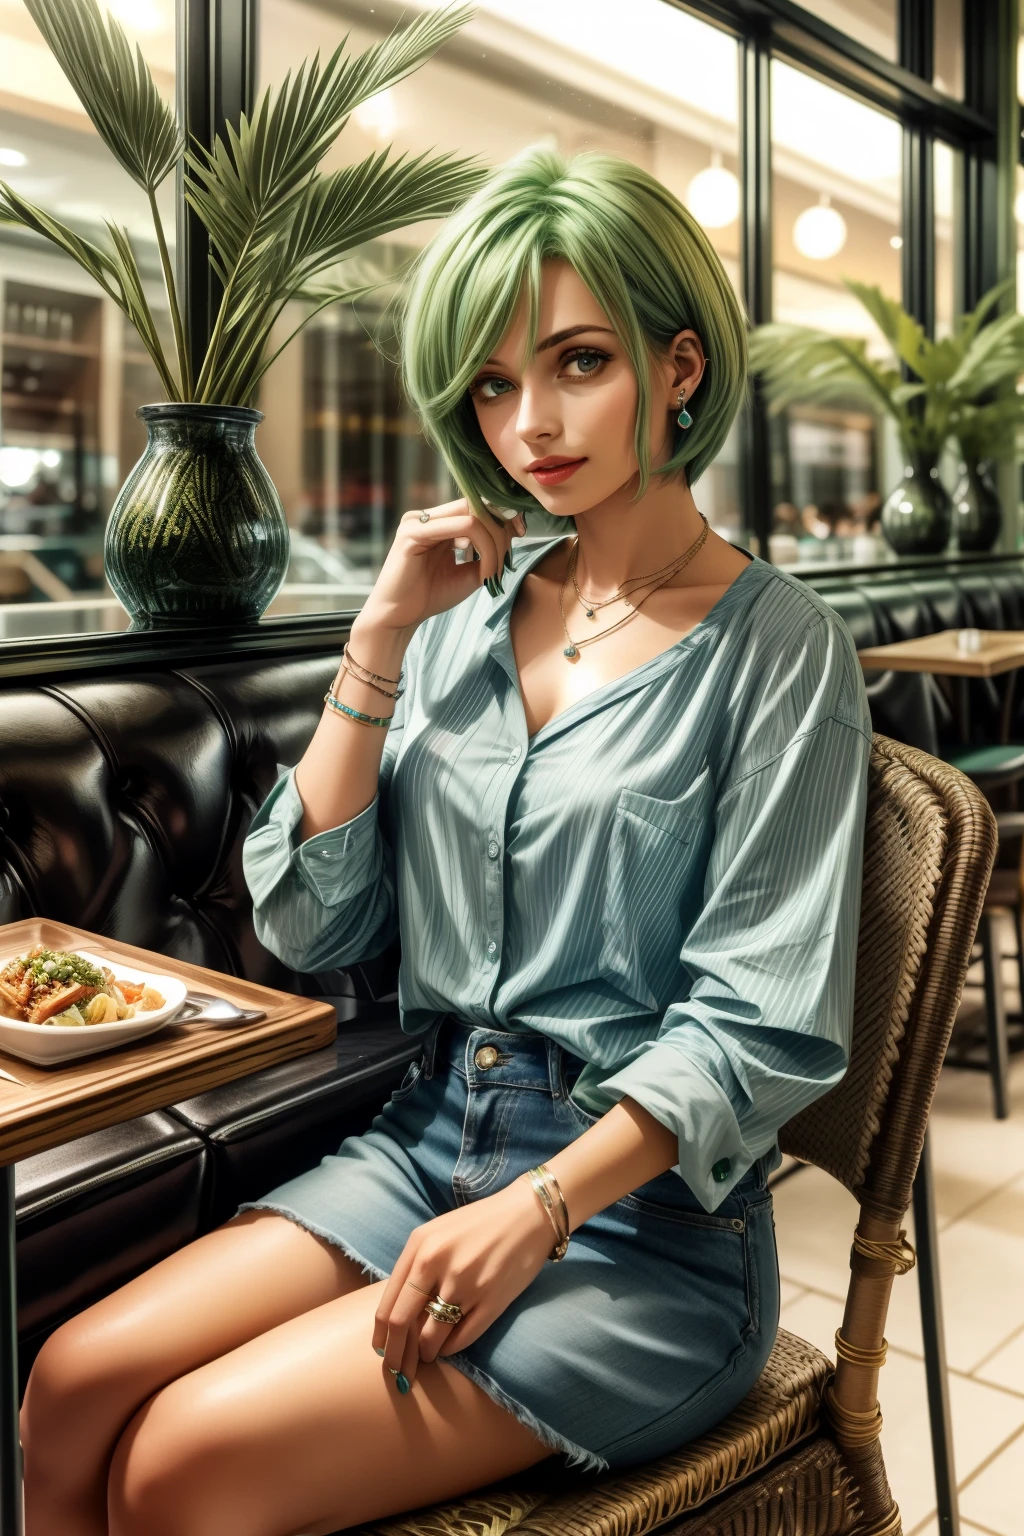 Фредерика Гринхилл, 25 лет, ярлык, зеленые волосы, weaкольцо a light Blue casual shirts fashion at a casual restaurant, сидя на стуле , earкольцоs, ожерелье, кольцо, браслет, 